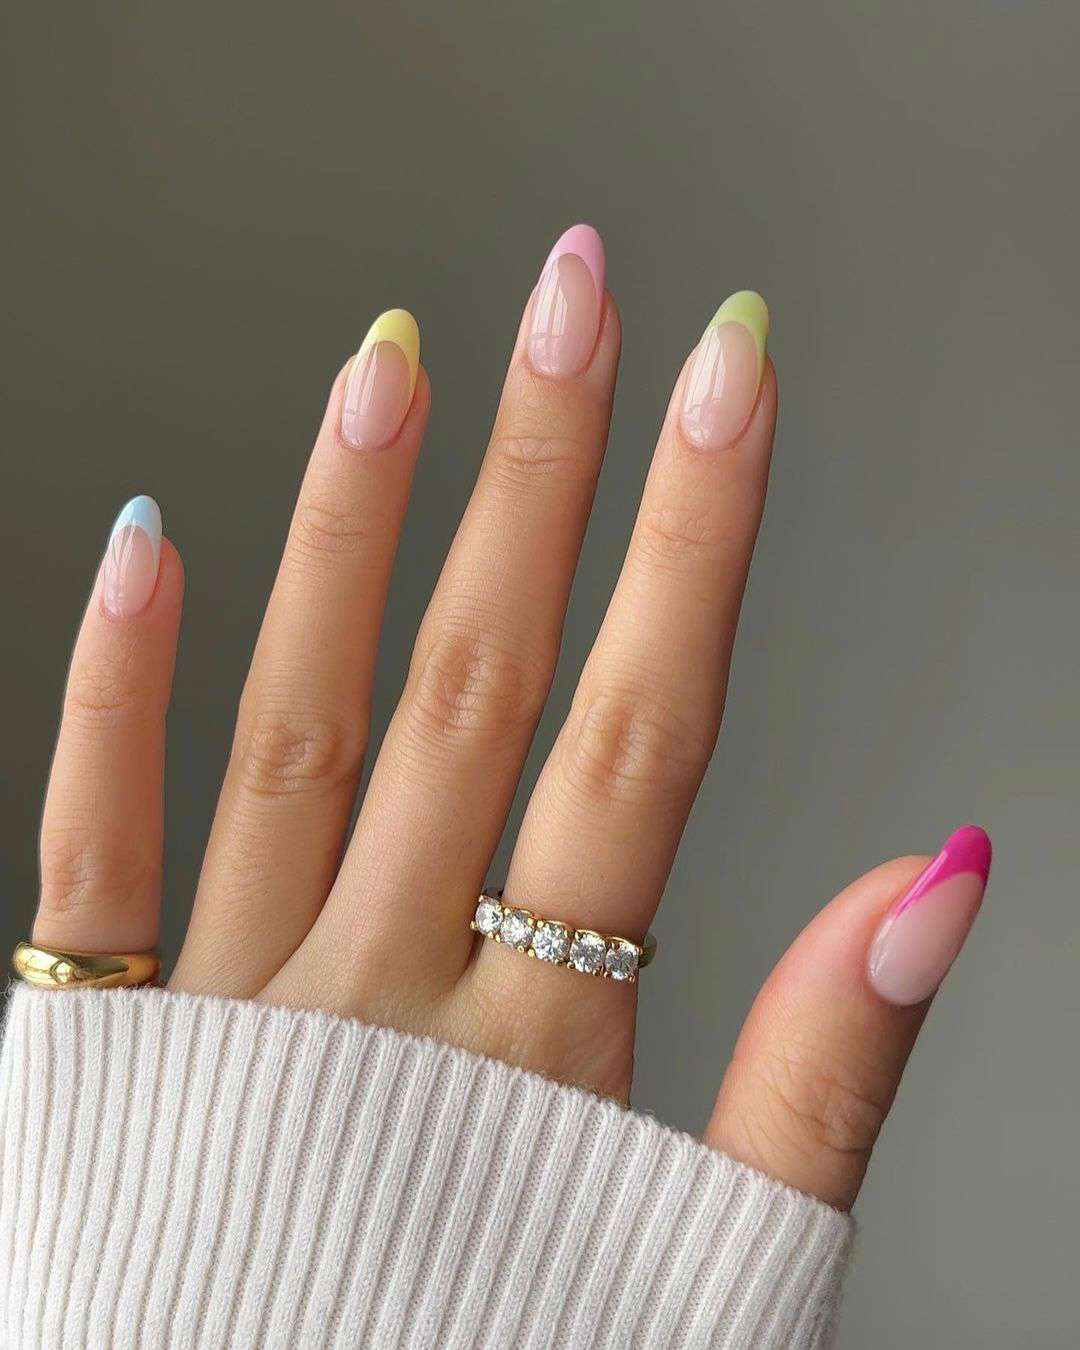 ideas de uñas que favorecen mucho si tienes la piel clara: Colores pastel